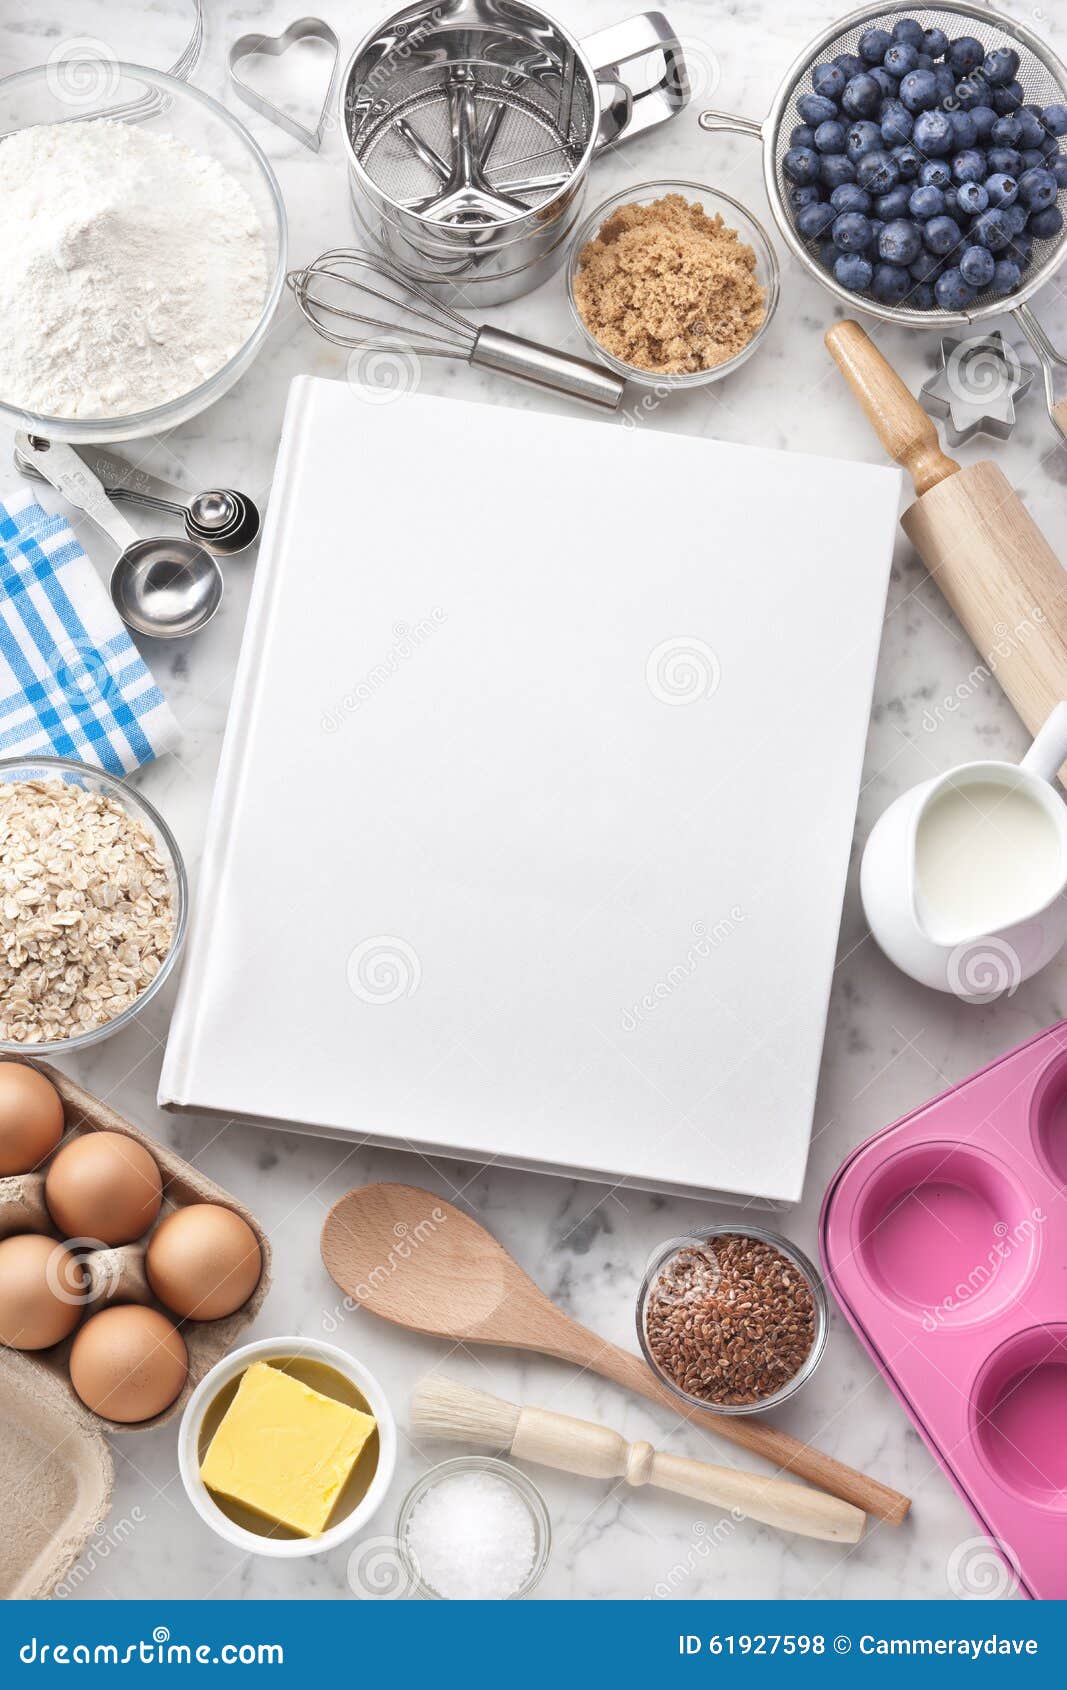 cookbook baking food background